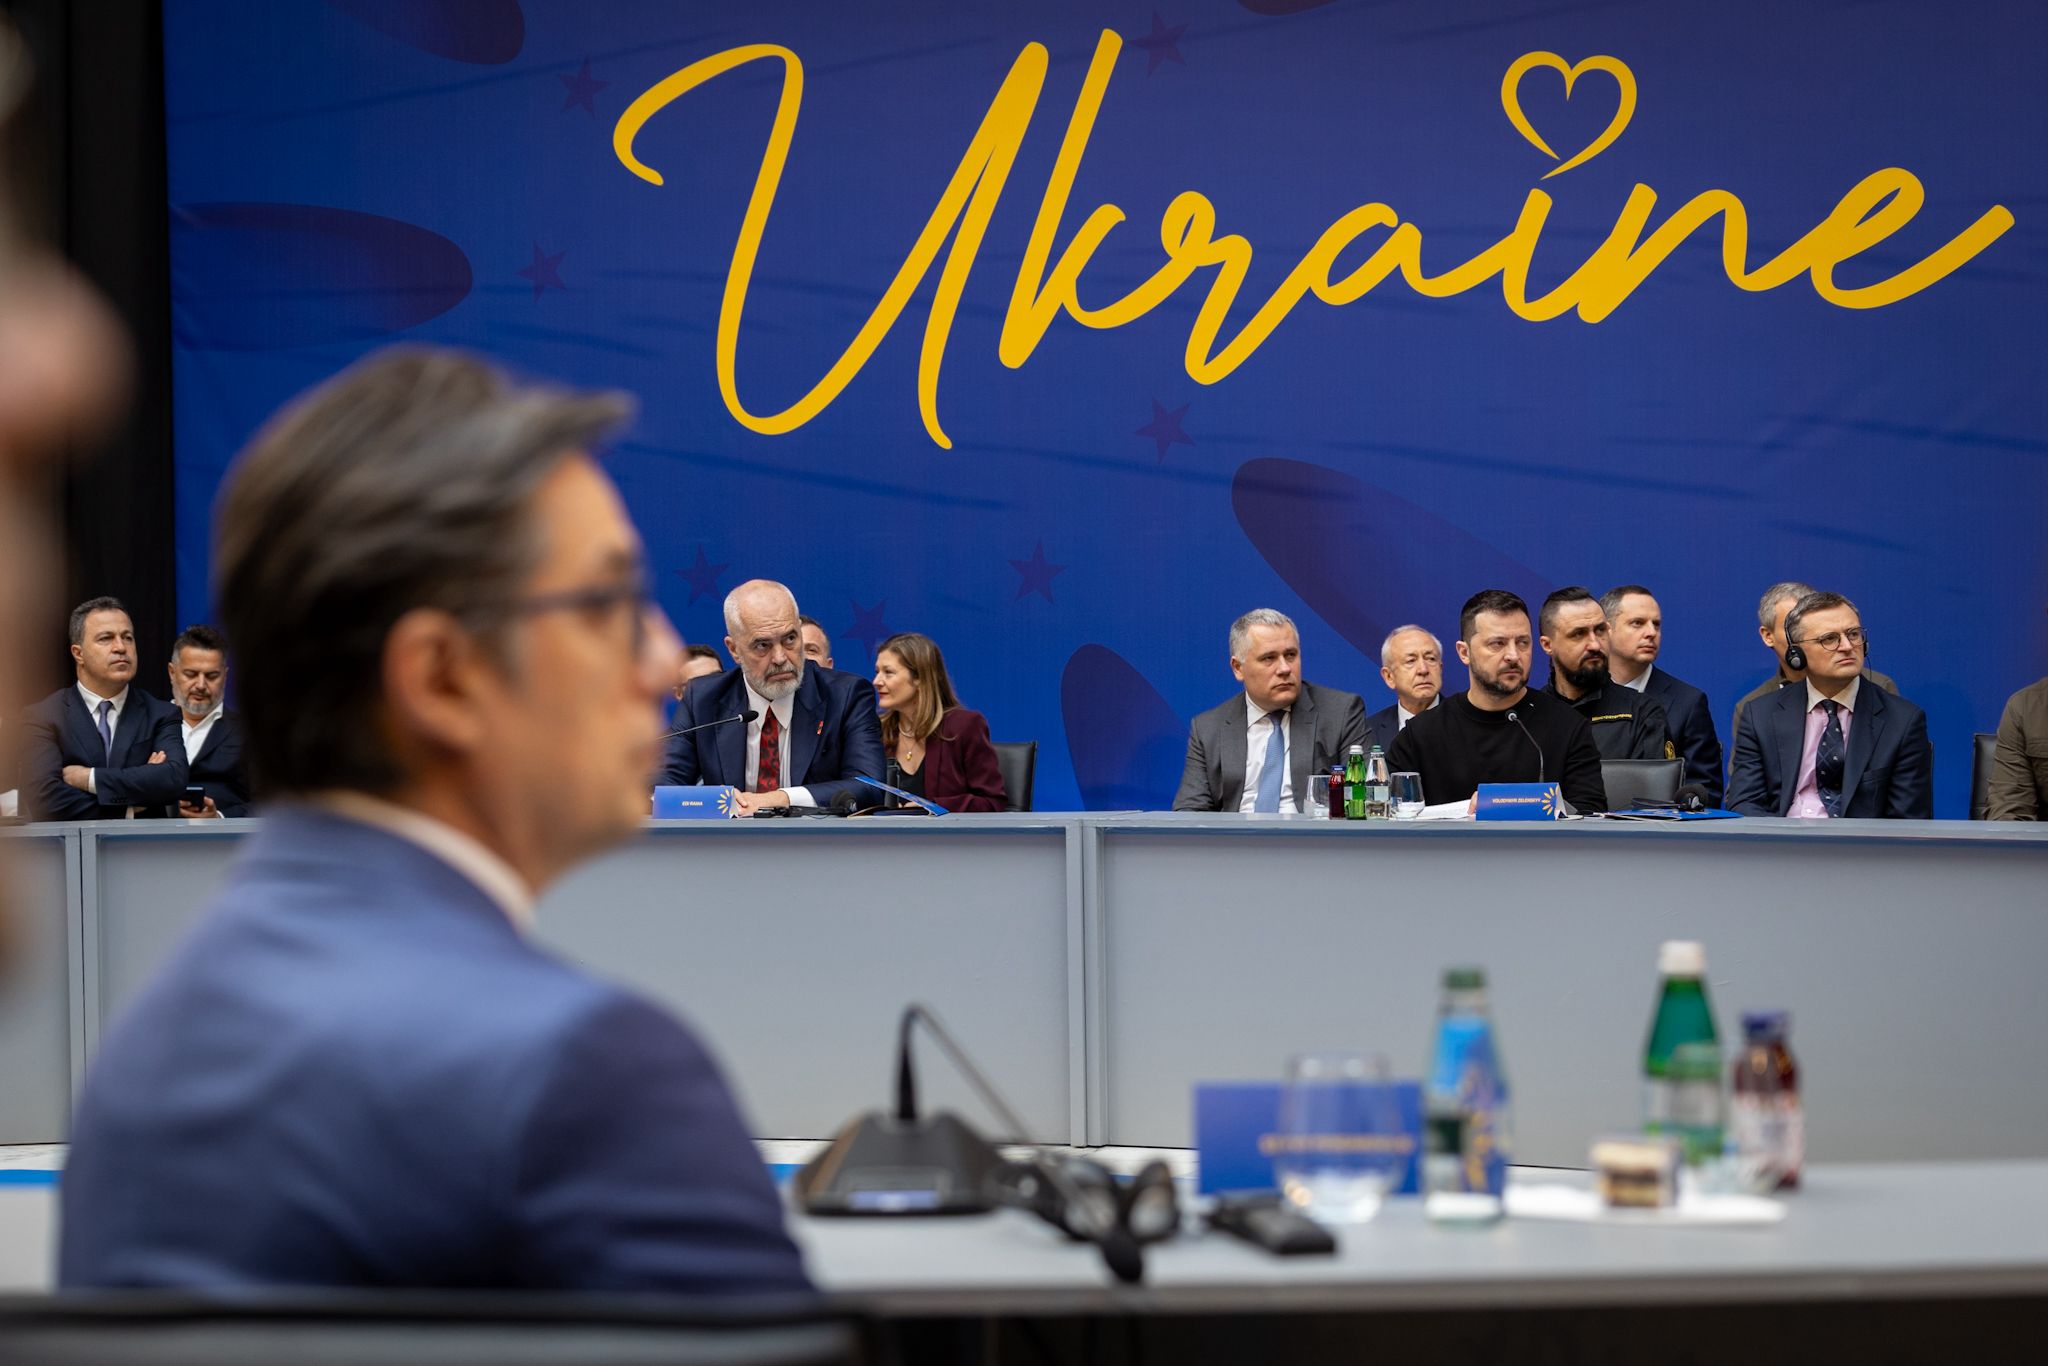 Пендаровски на Самитот Украина – Југоисточна Европа во Тирана: Борбата за слобода на Украина се води во име на целиот демократски и цивилизиран свет